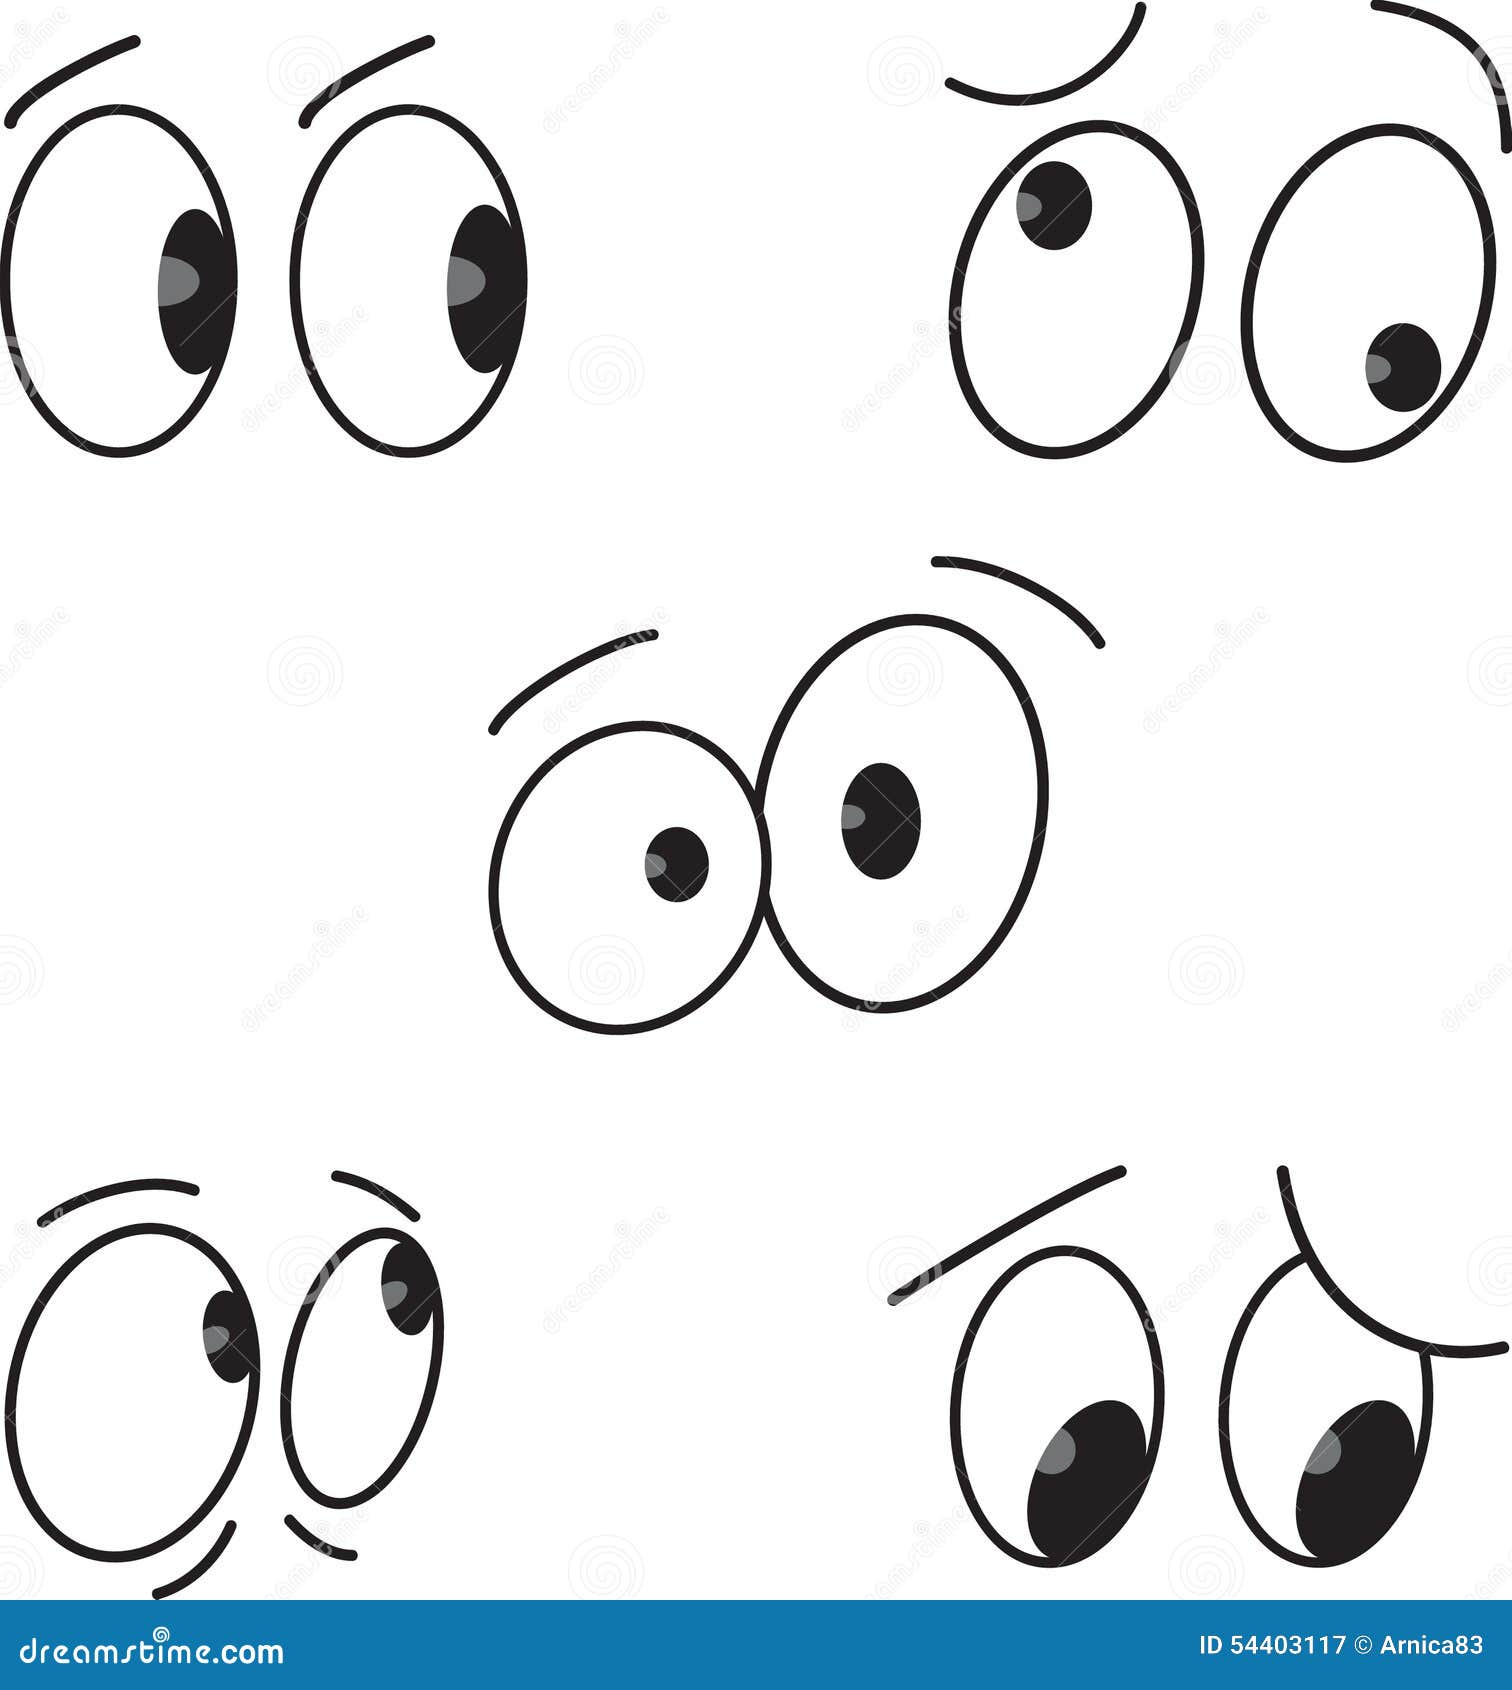 illustration stock yeux de dessin animé réglés vecteur image